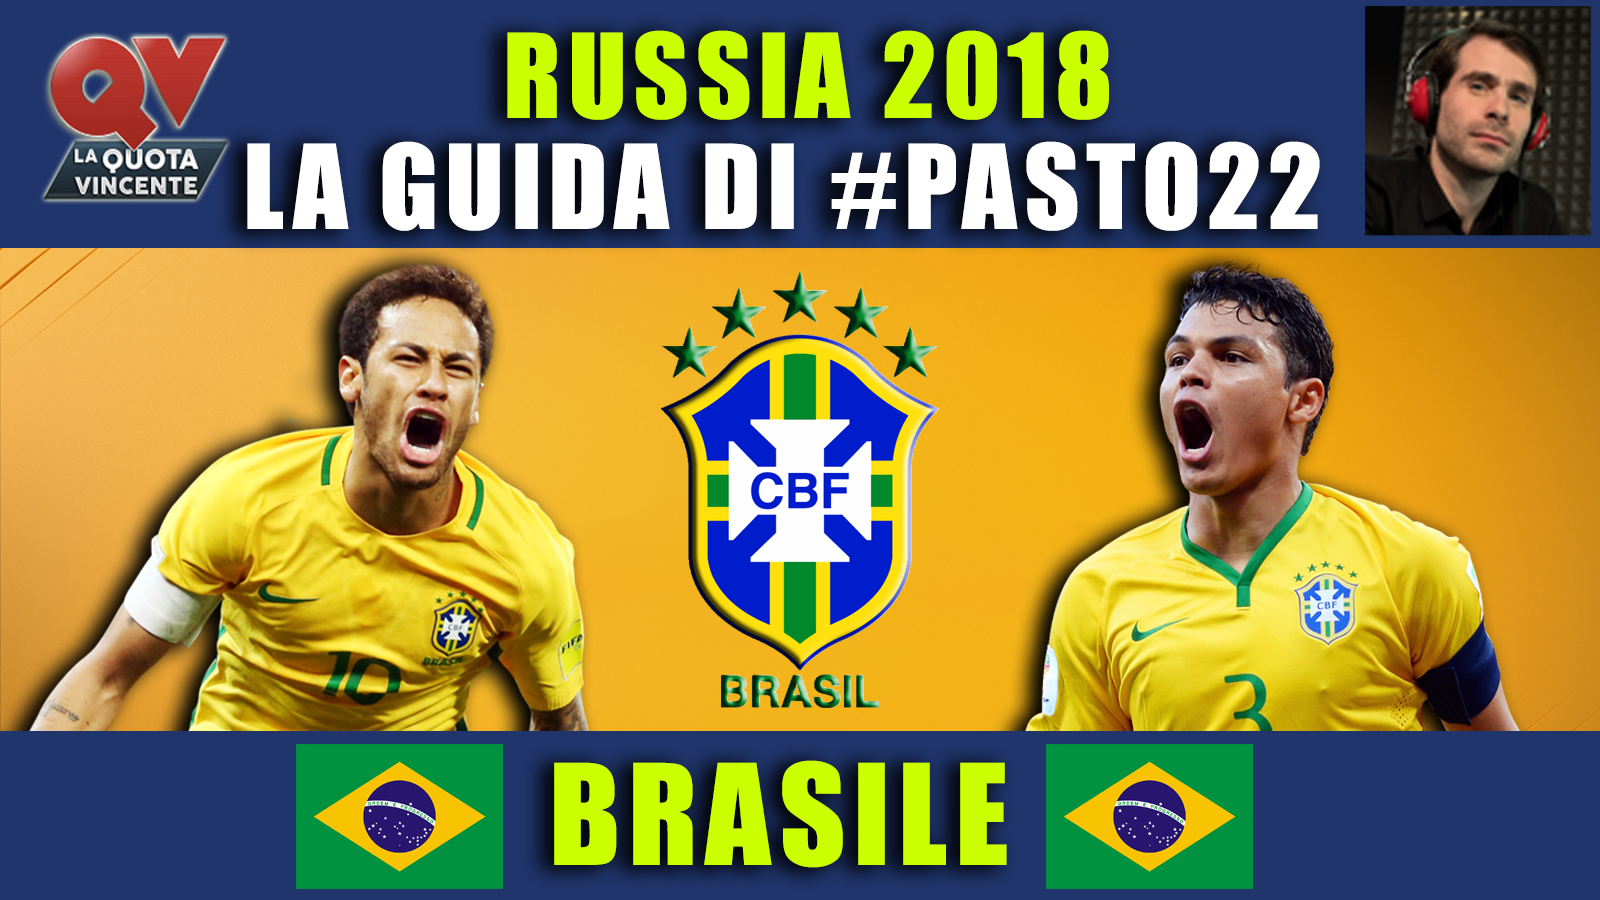 Guida ai Mondiali Russia 2018 Brasile